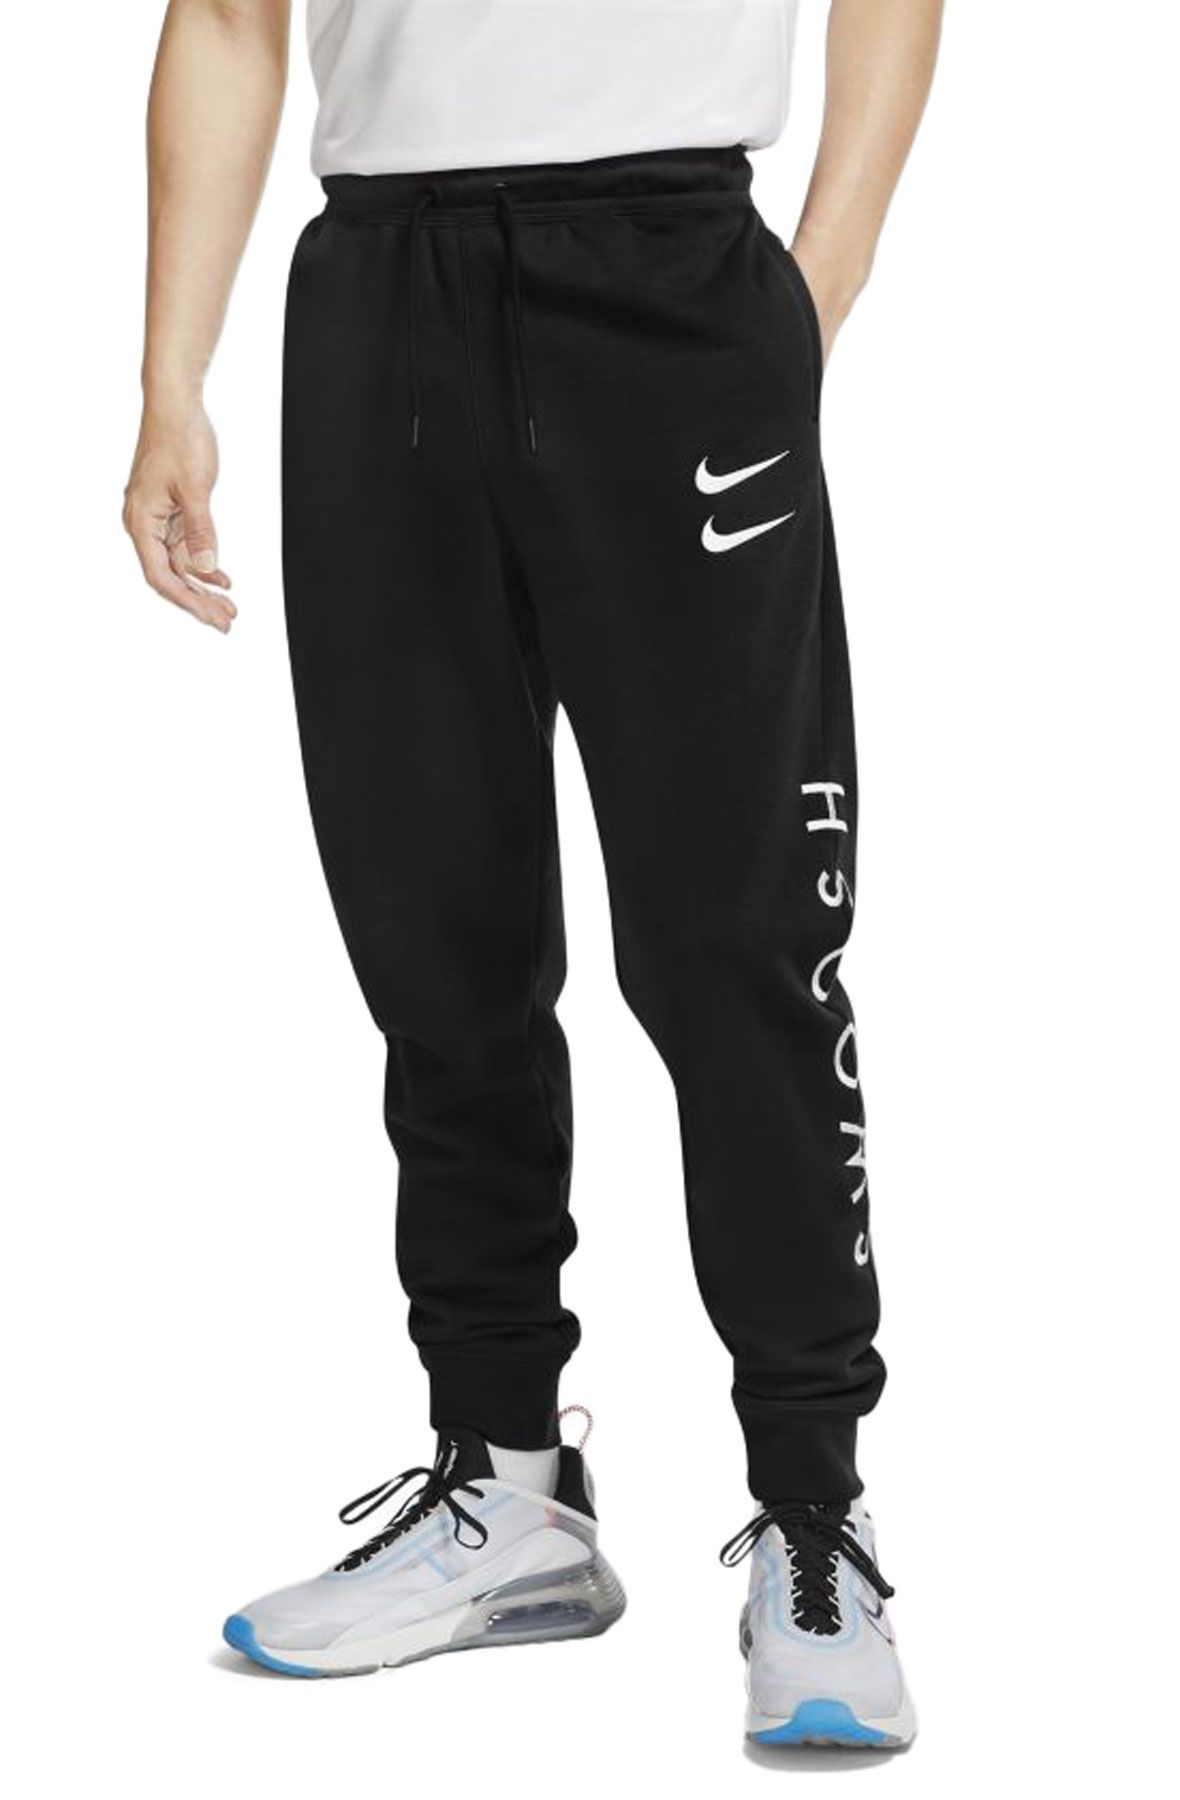 Nike Sportswear Swoosh Pants Black